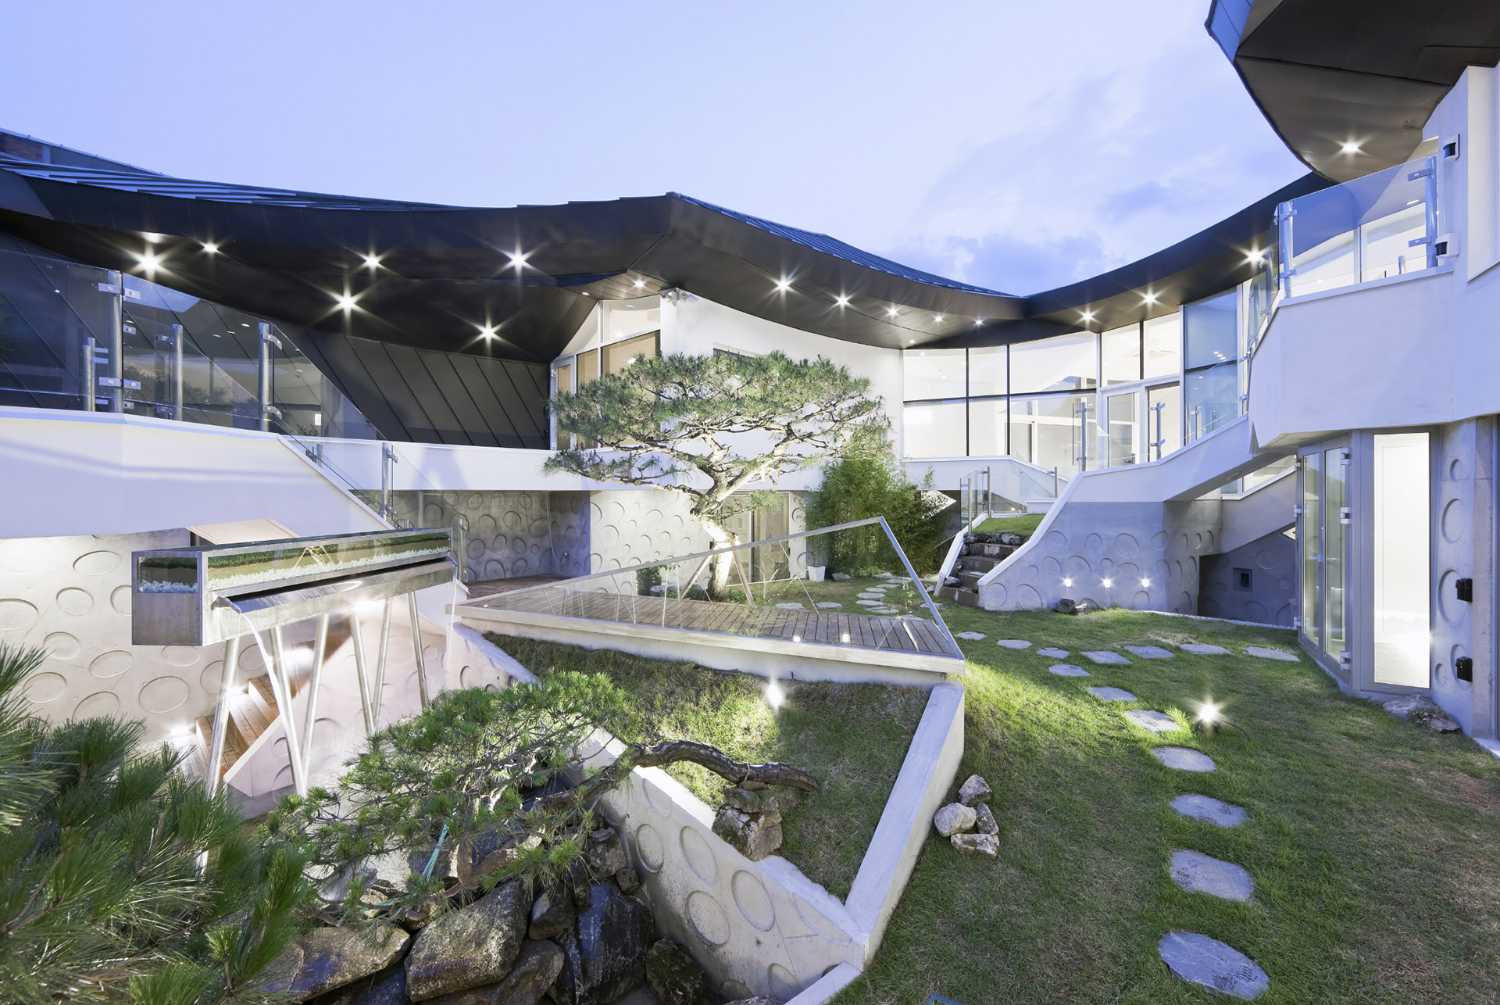 Tradition coréenne dans un langage architectural moderne pour la villa hyperdynamique GA ON JAI